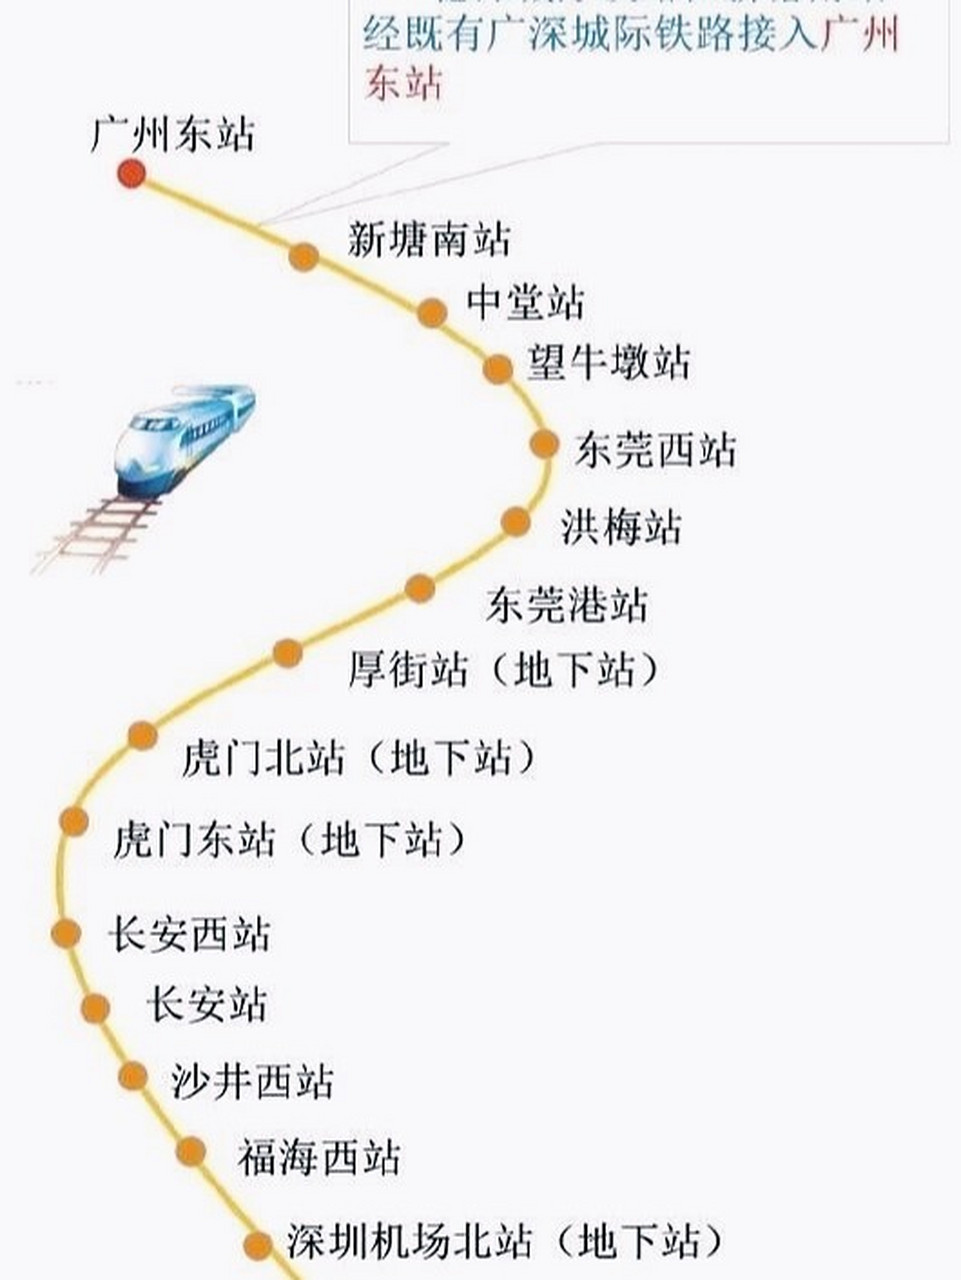 第一次搭穗莞深城际列车回家  很方便啦穗莞深城际列车包括路线有广州